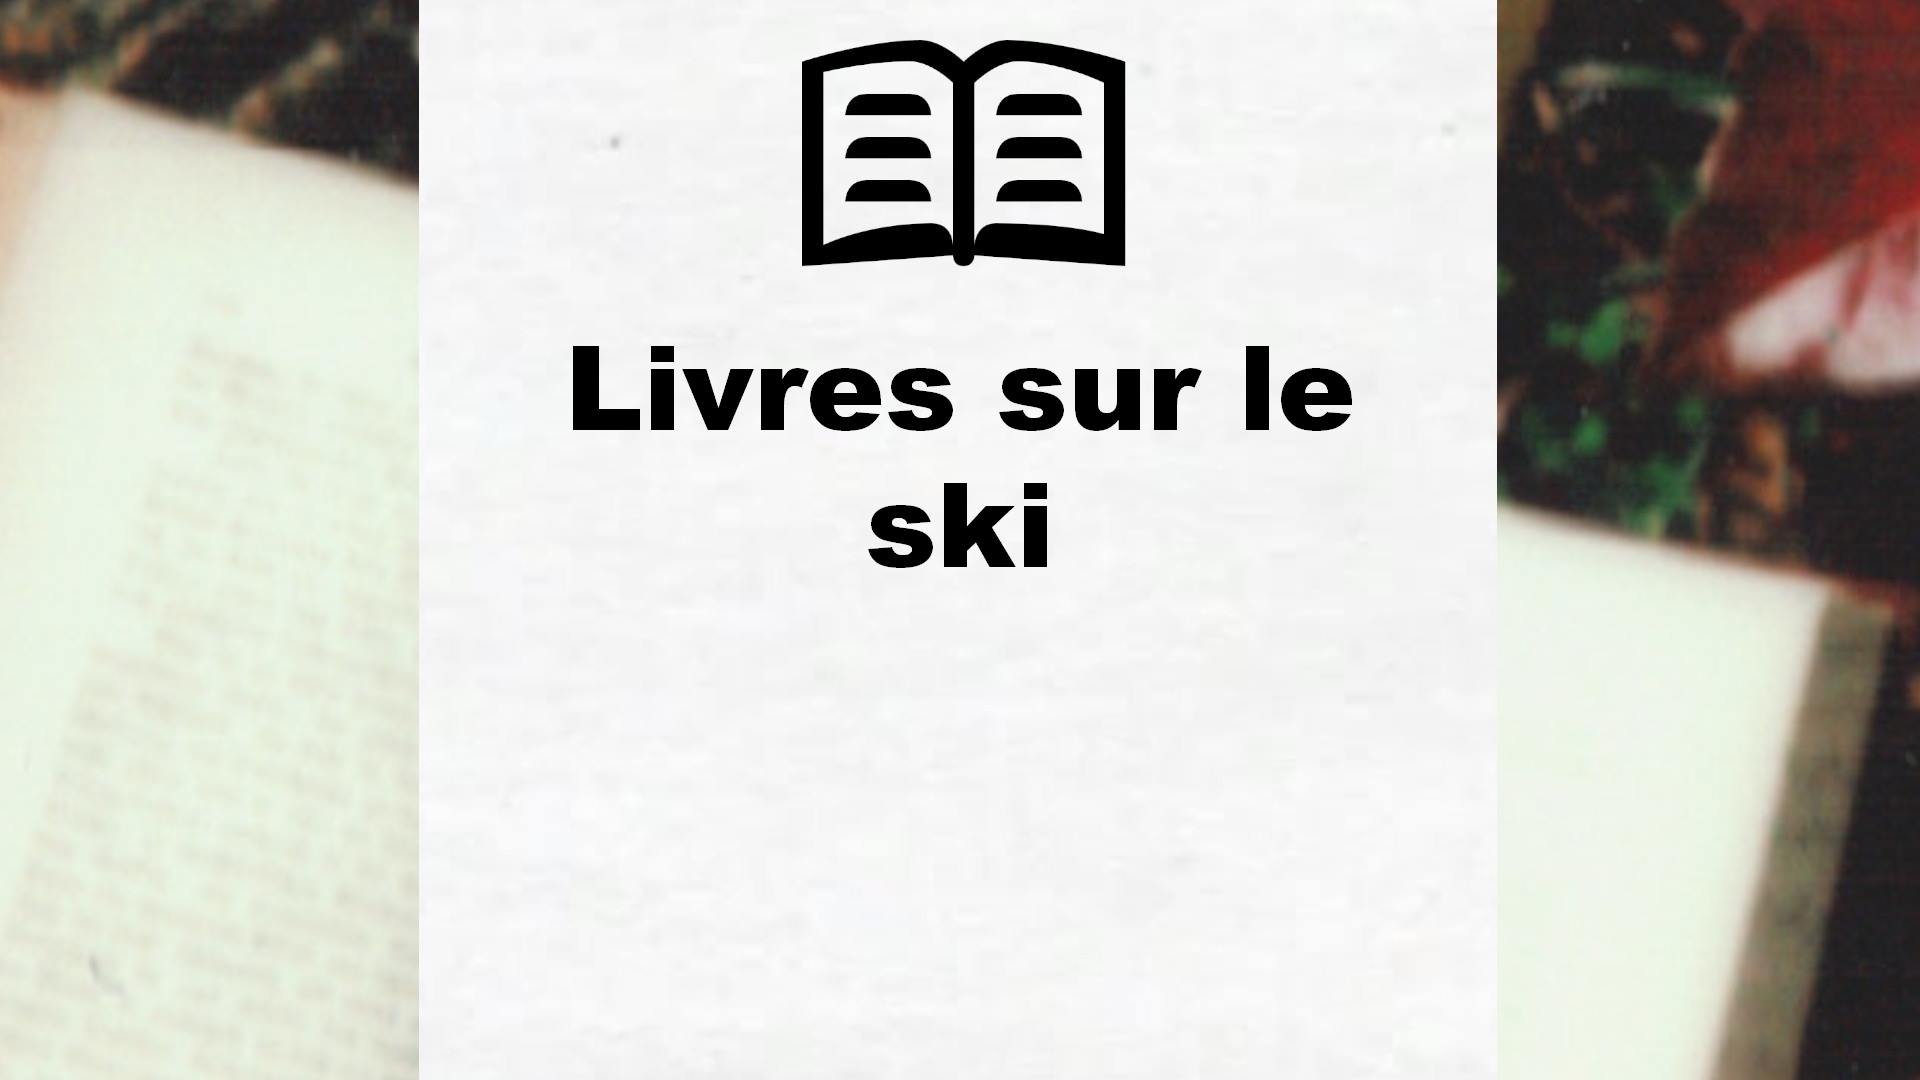 Livres sur le ski